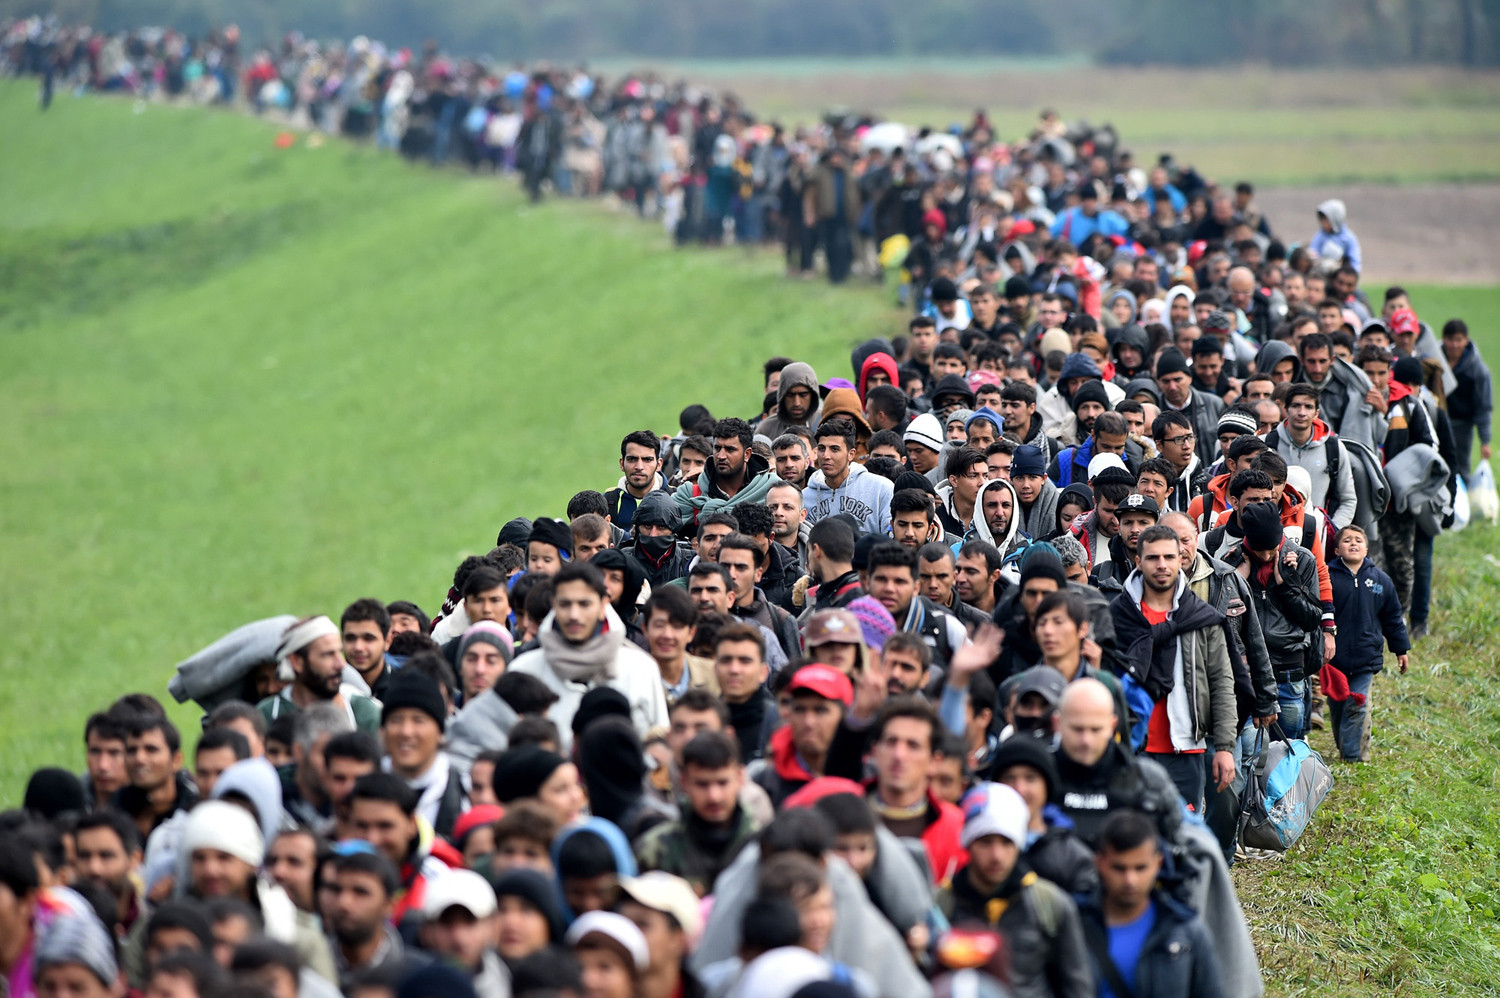 Μειώθηκε η ροή των προσφύγων προς την Ευρώπη – Αντιμετωπίζουν βασανιστήρια, απαγωγές και σεξουαλική βία